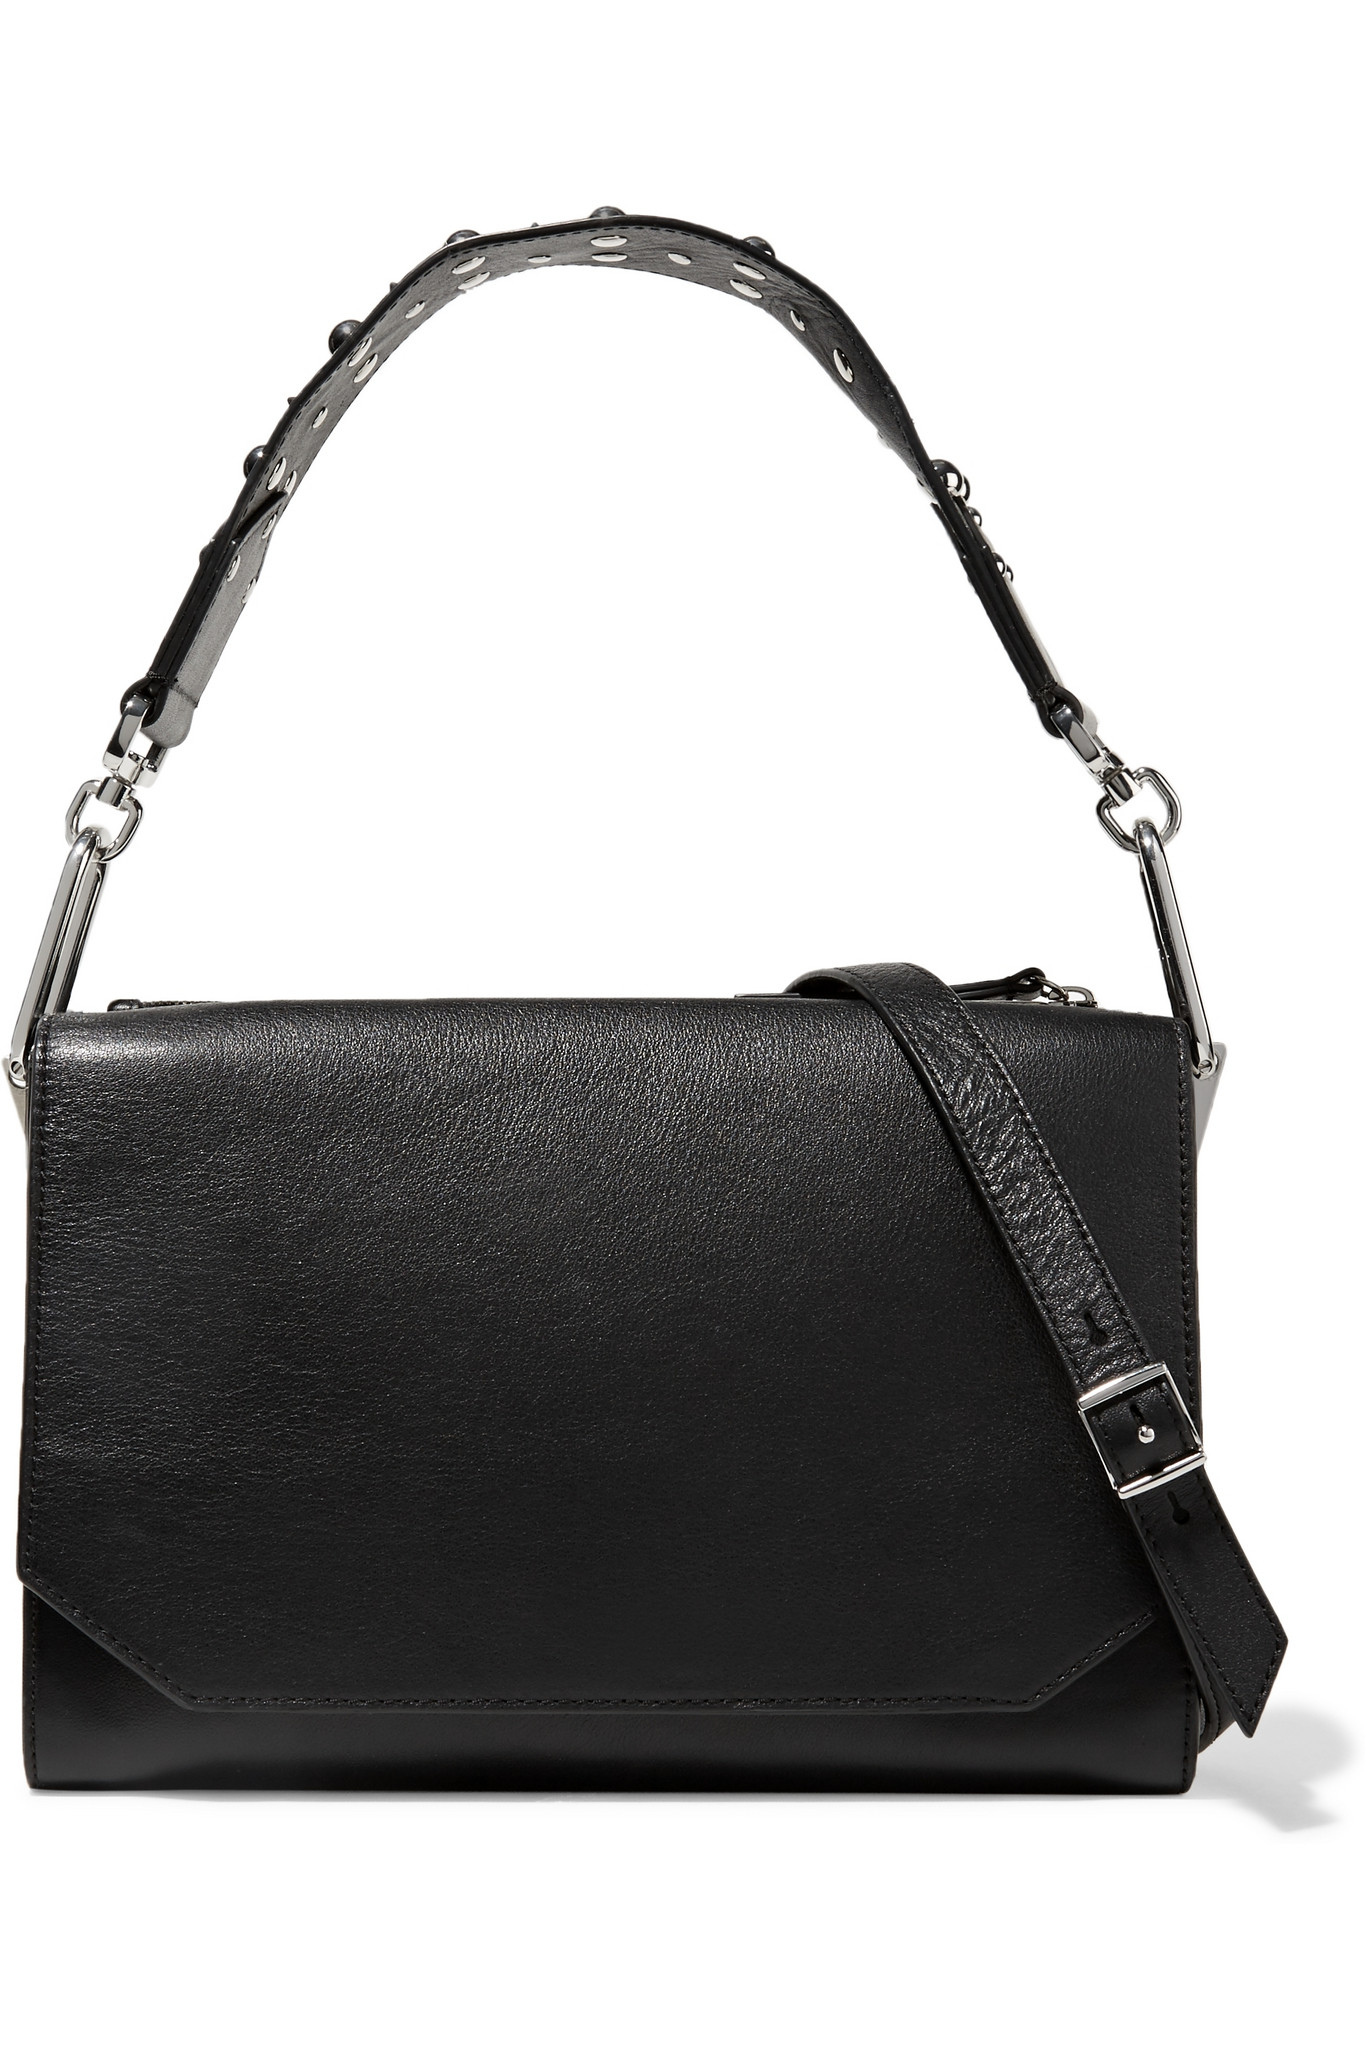 McQ Studded Leather Shoulder Bag in Black - Lyst